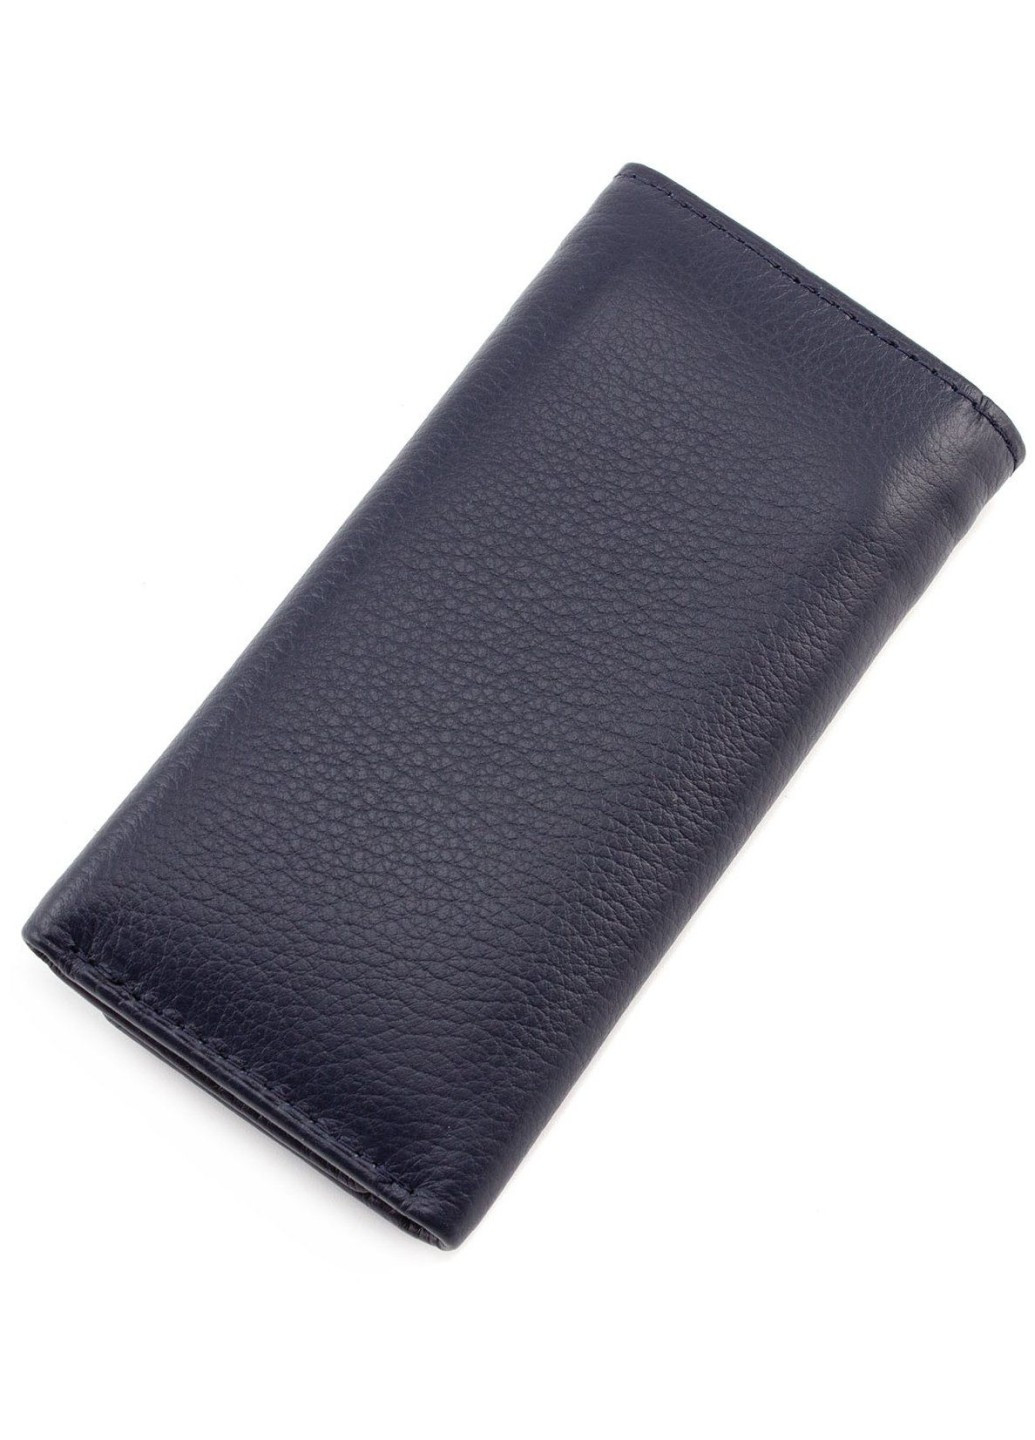 Шкіряний гаманець - ключниця для дівчат MC-5551-5 (JZ6672) синій Marco Coverna (259752465)